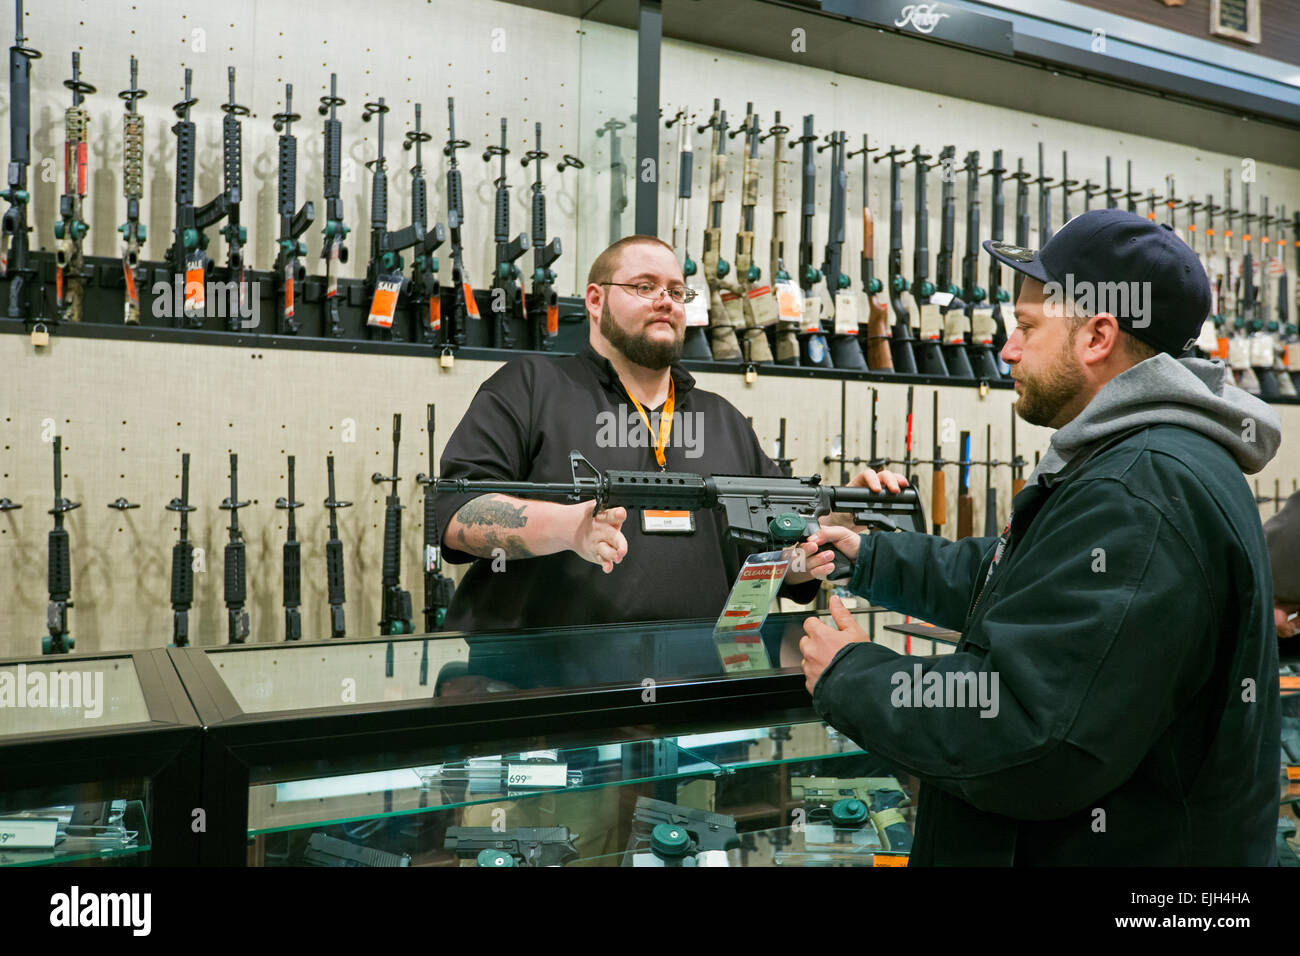 Troy, Michigan - Feuerwaffen auf Verkauf im Bereich & Dampf im Freien laden. Stockfoto